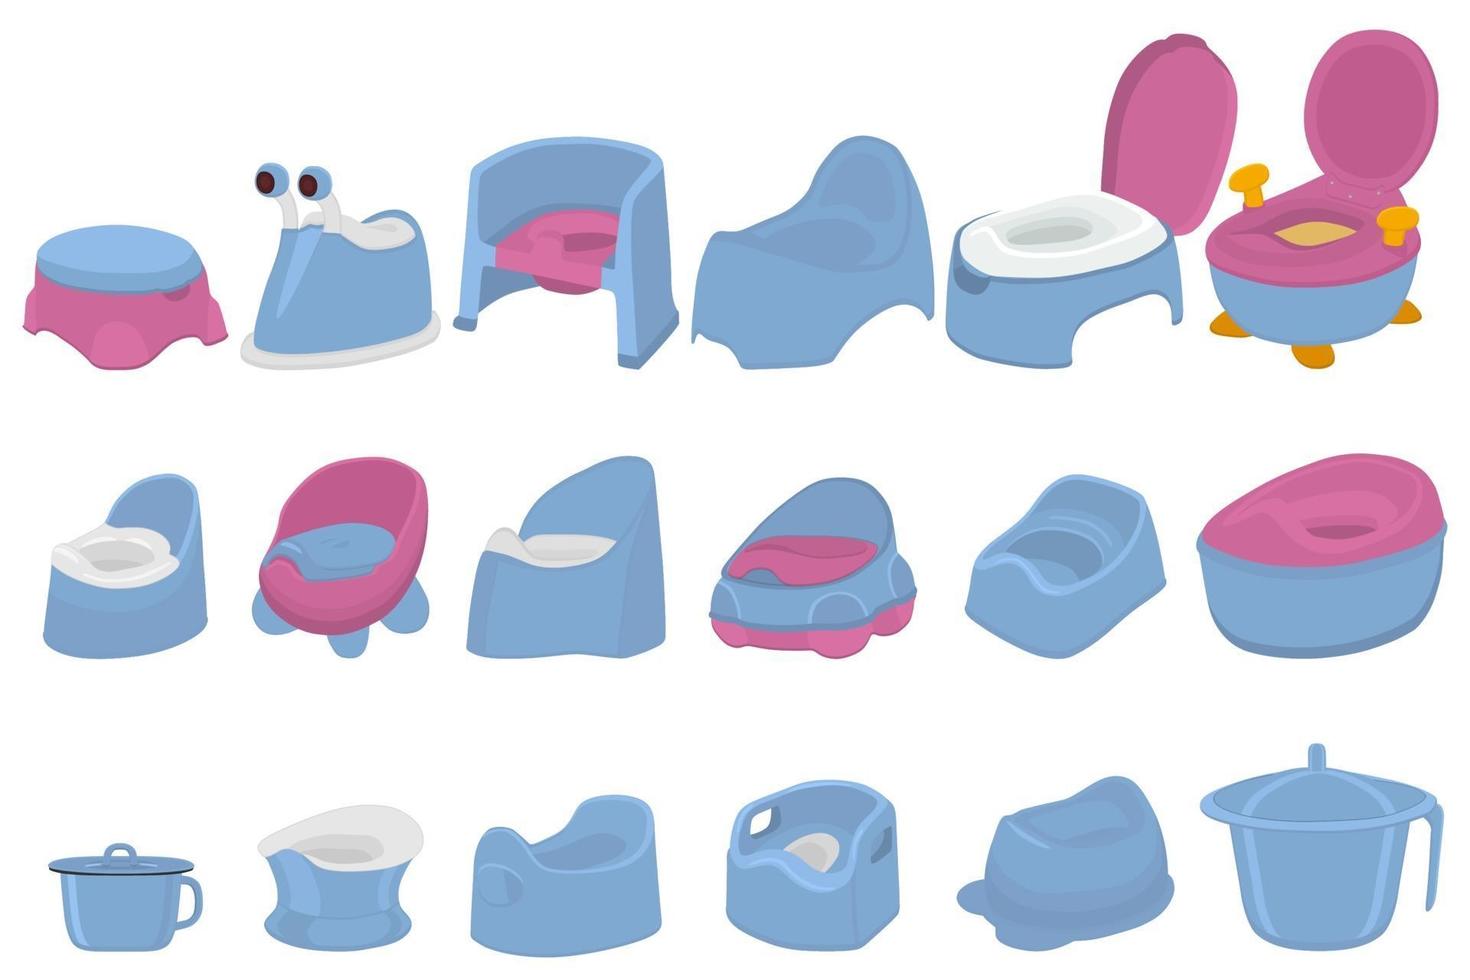 illustratie op themapakket plastic babypotten met comfortabel handvat vector